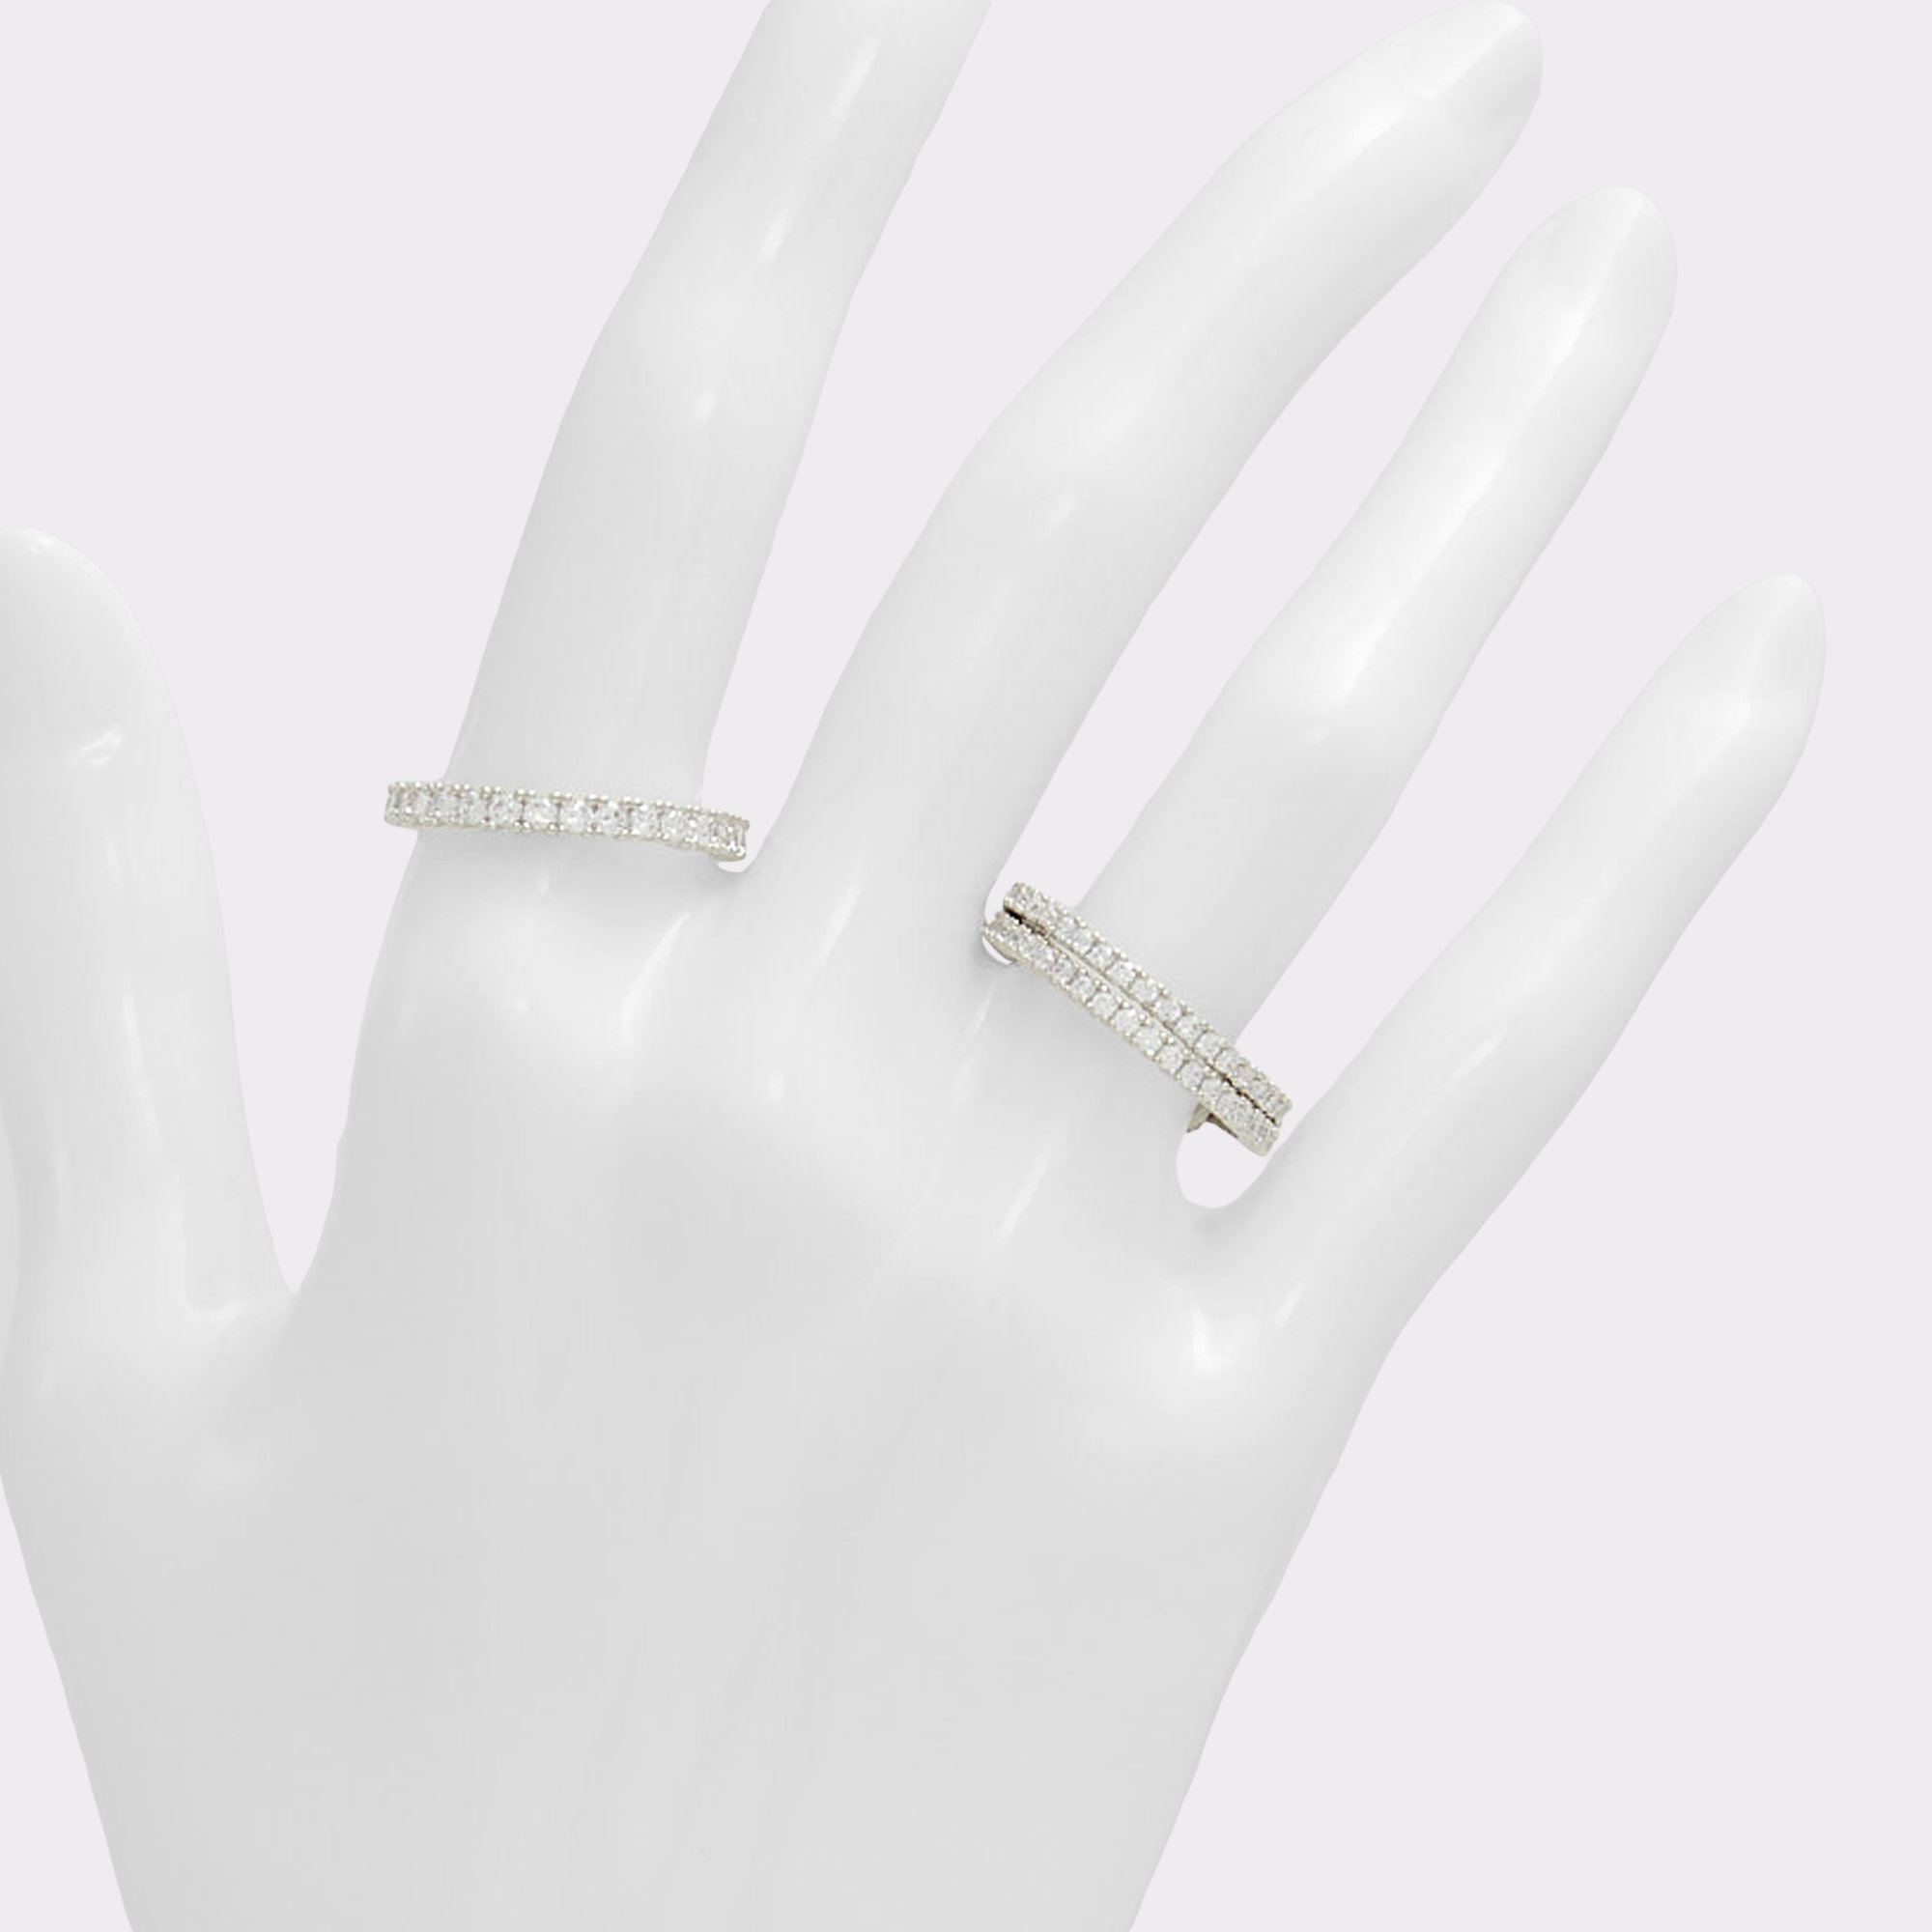 Uniawienmini Silver/Clear Multi Women's Rings | ALDO Canada